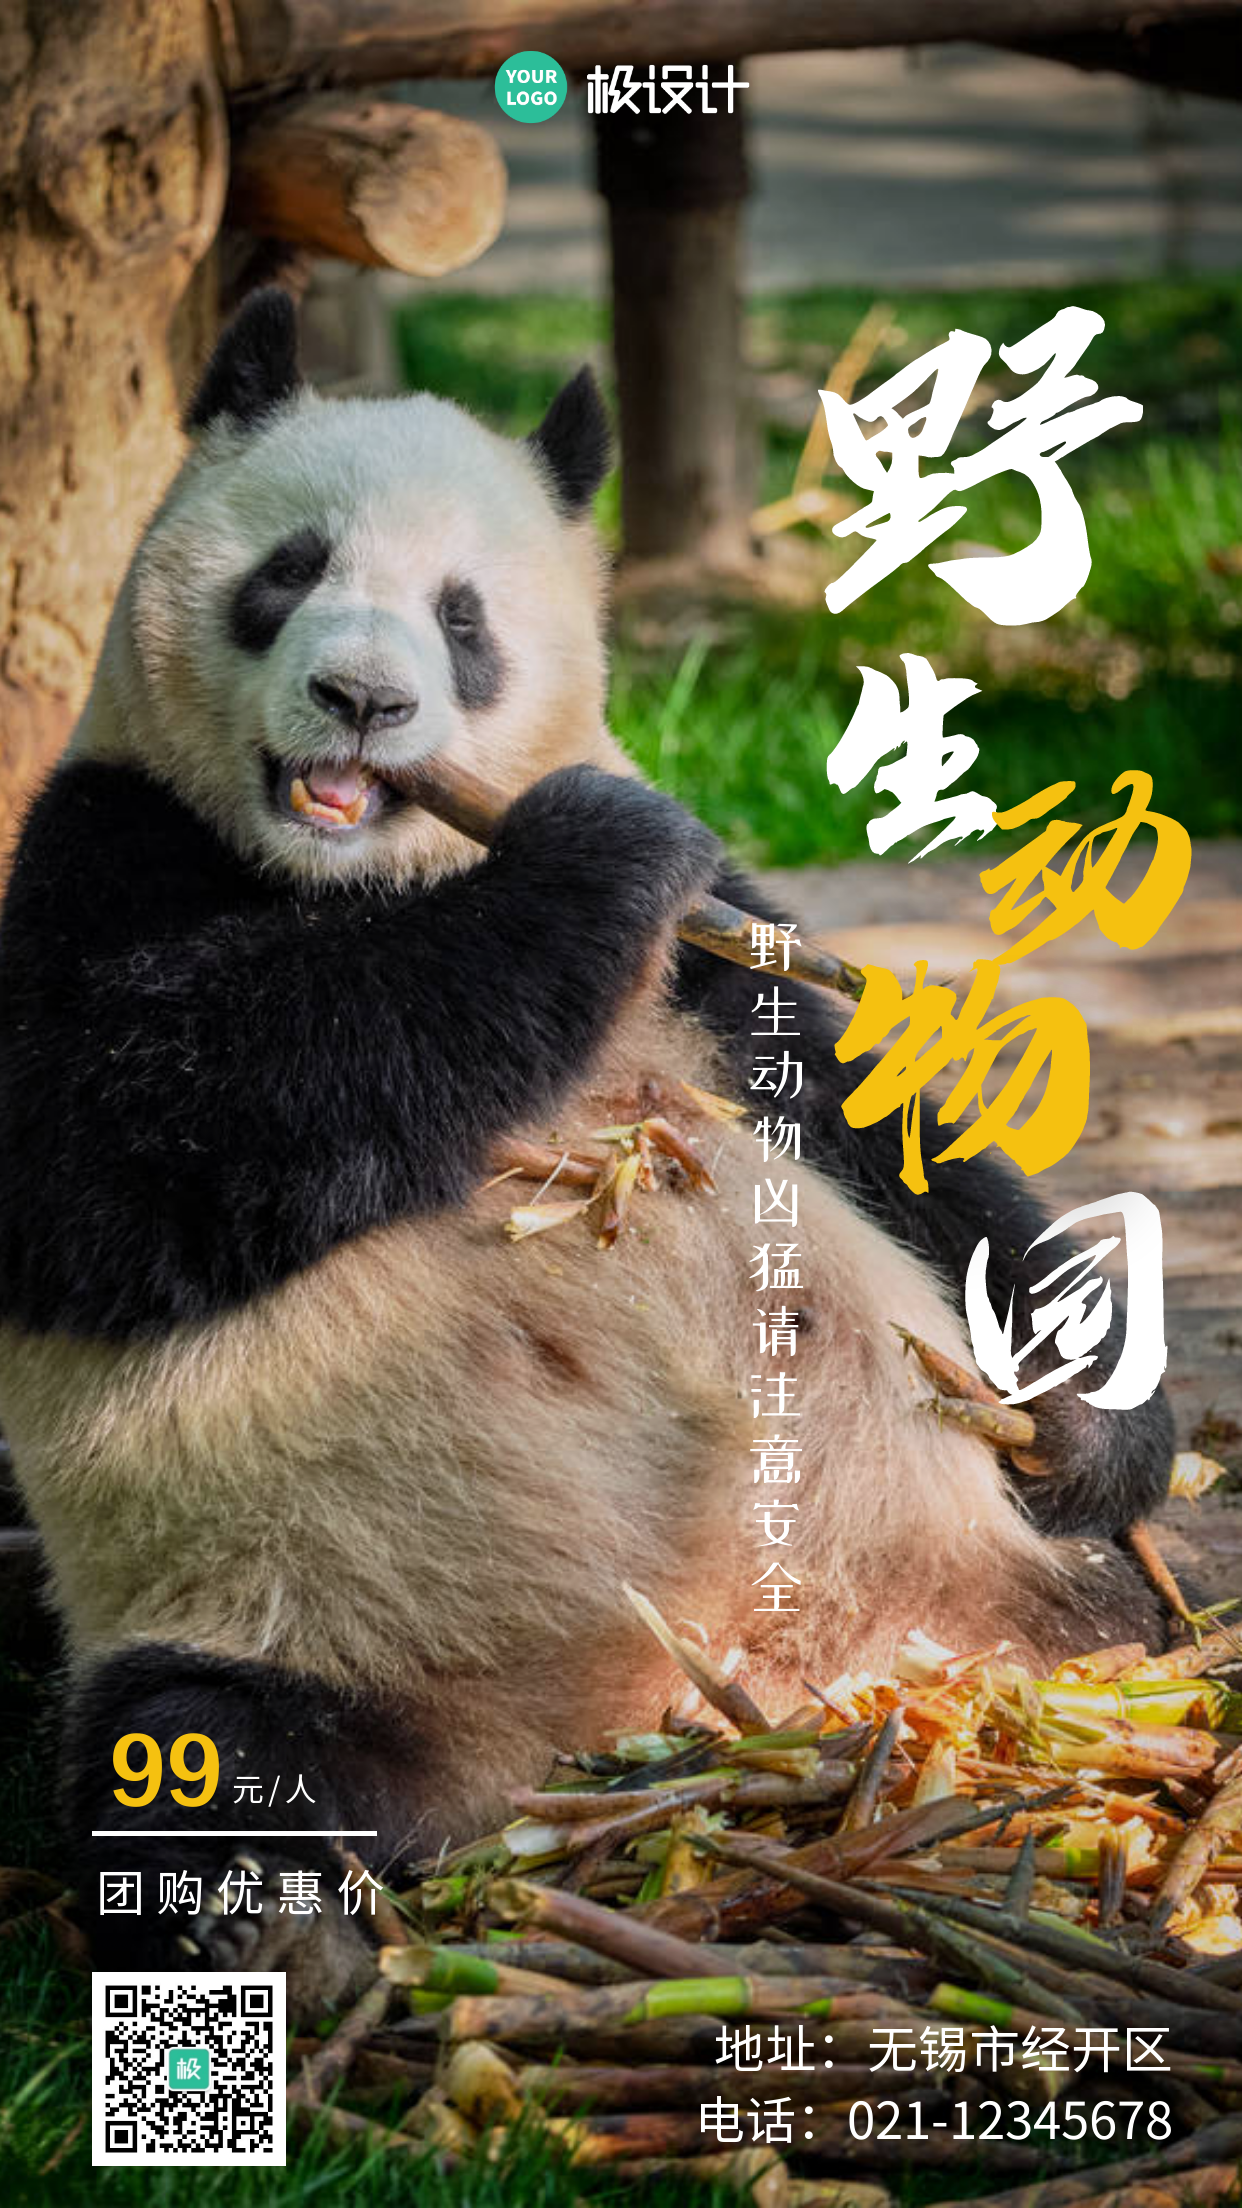 学校组织野生动物园参观简约手机营销海报